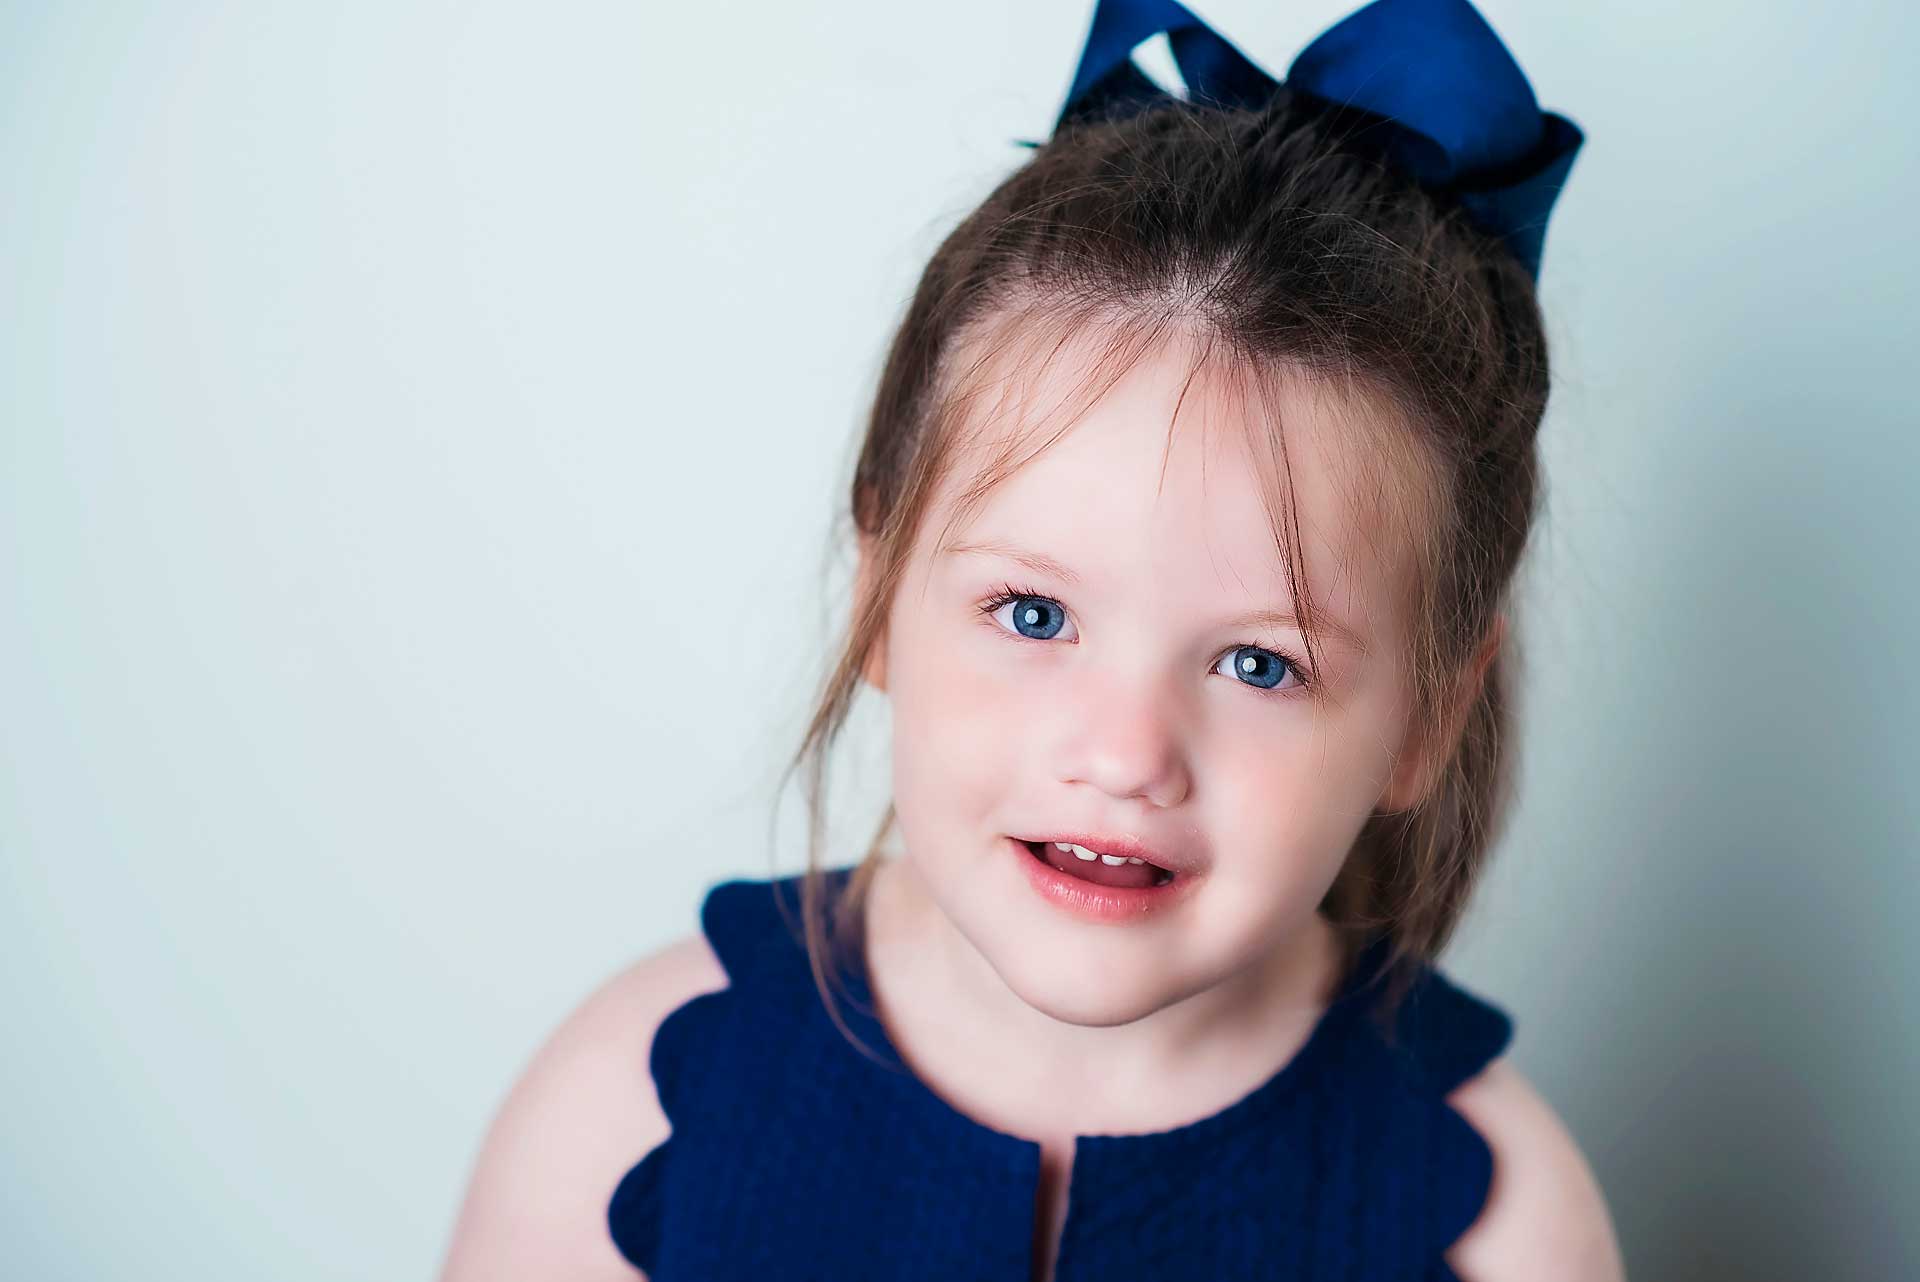 Children & Families Photography Portfolio | Amika Gair | Newborn Photographer | West Hartford, CT